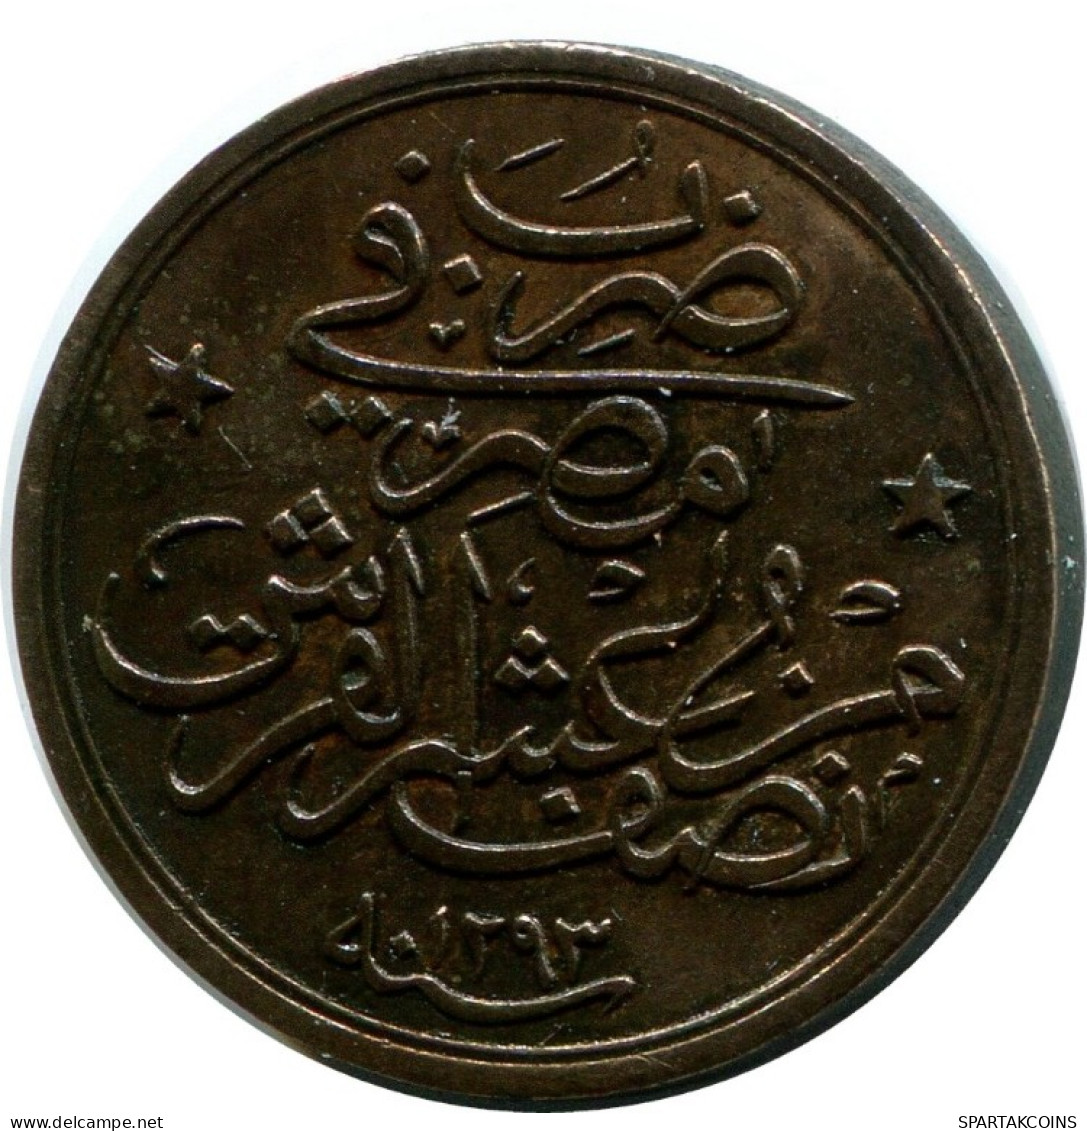 1/40 QIRSH 1884 ÄGYPTEN EGYPT Islamisch Münze #AH242.10.D.A - Egypt